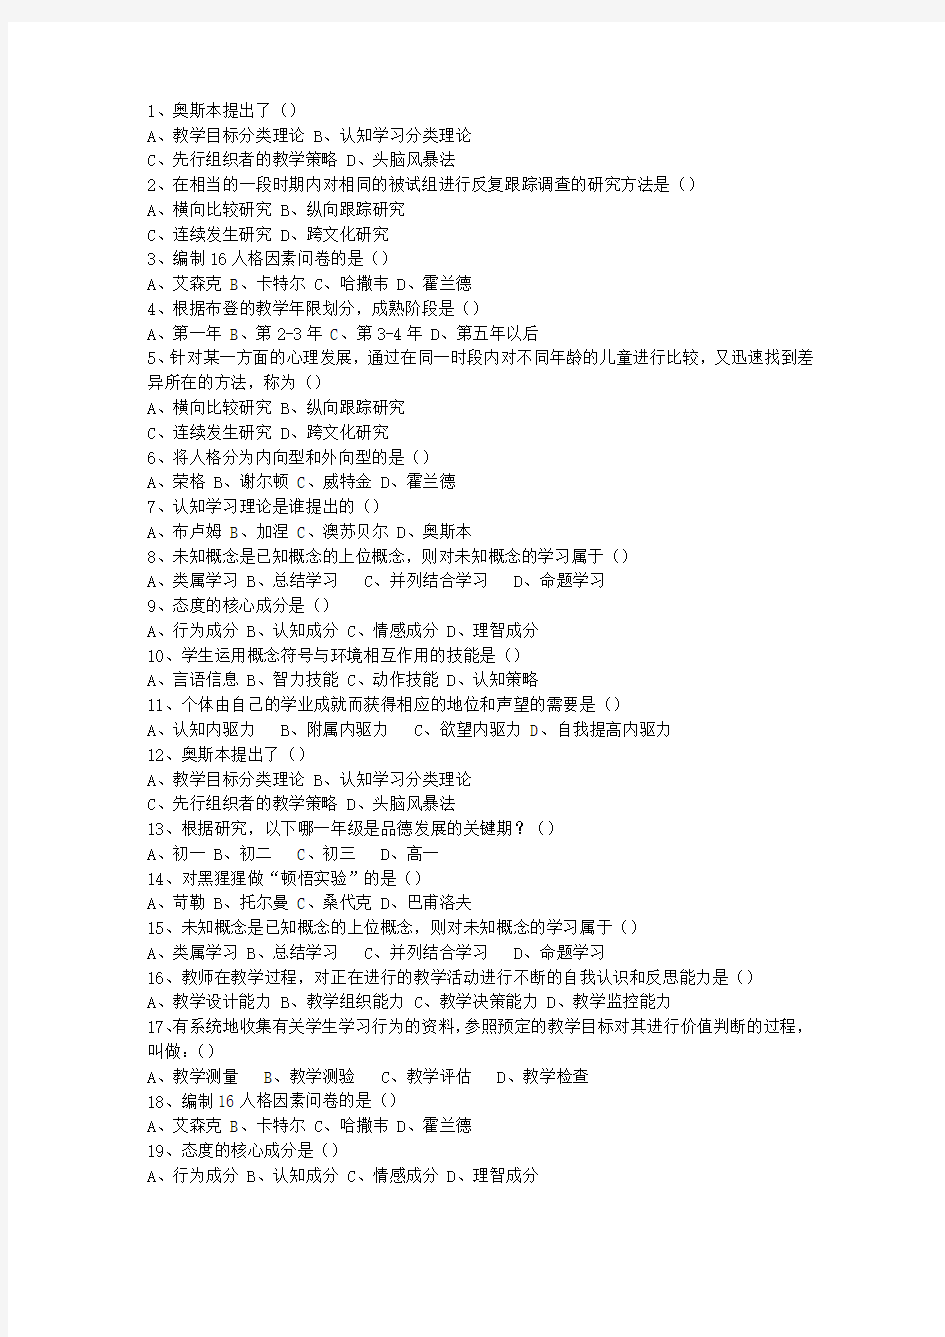 2012安徽省教师资格证考试笔试(必备资料)